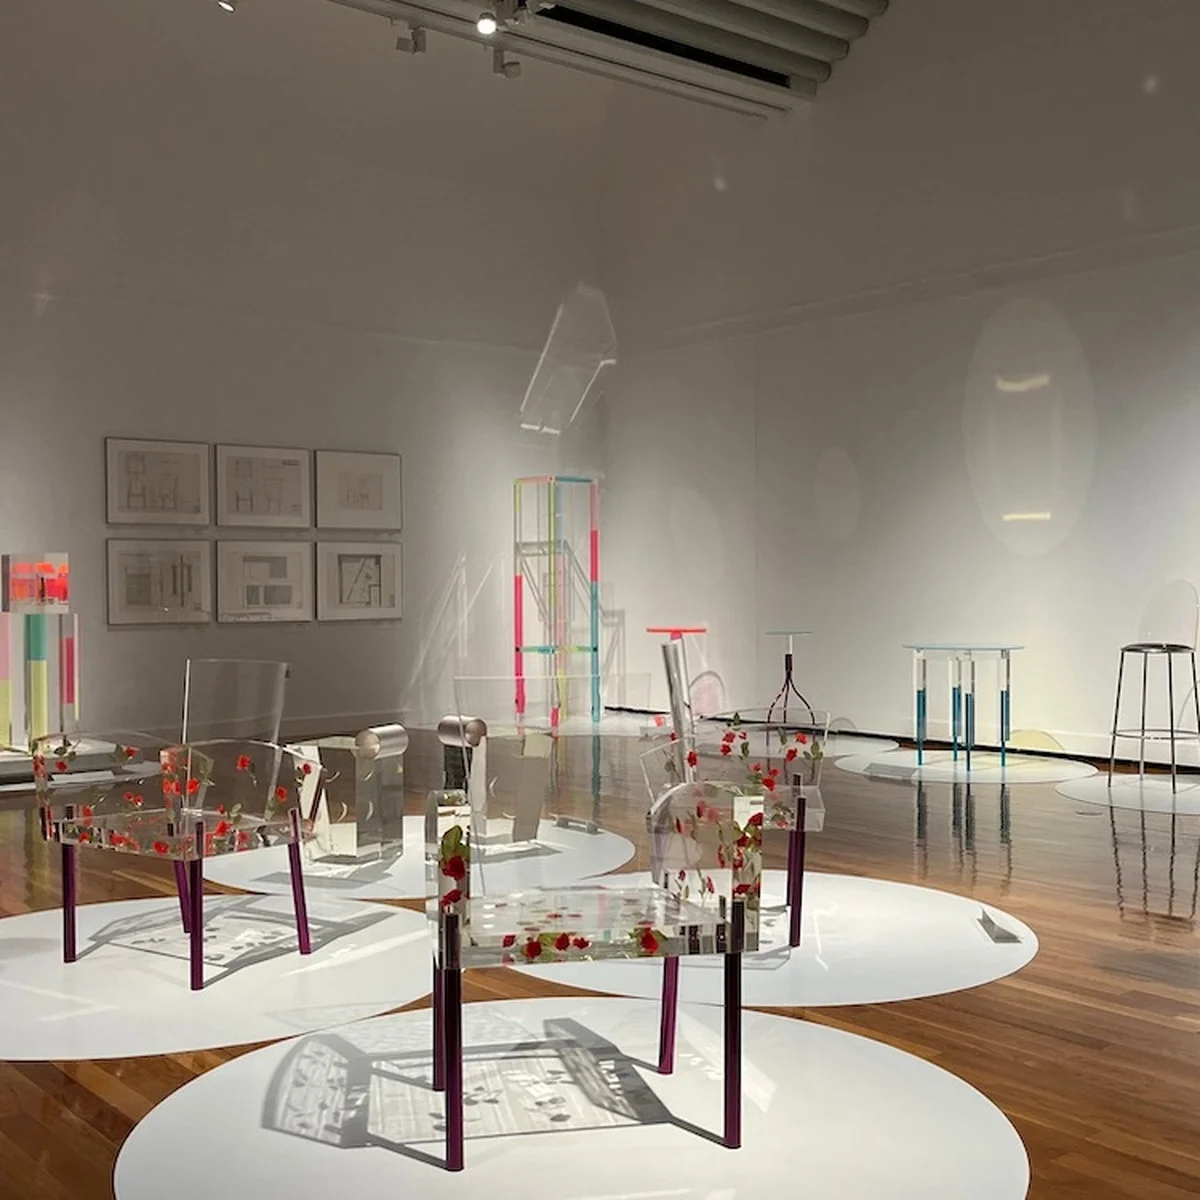 没後30余年、伝説のデザイナーによる創作を振り返る。「倉俣史朗のデザイン―記憶のなかの小宇宙」、世田谷美術館にて開催中